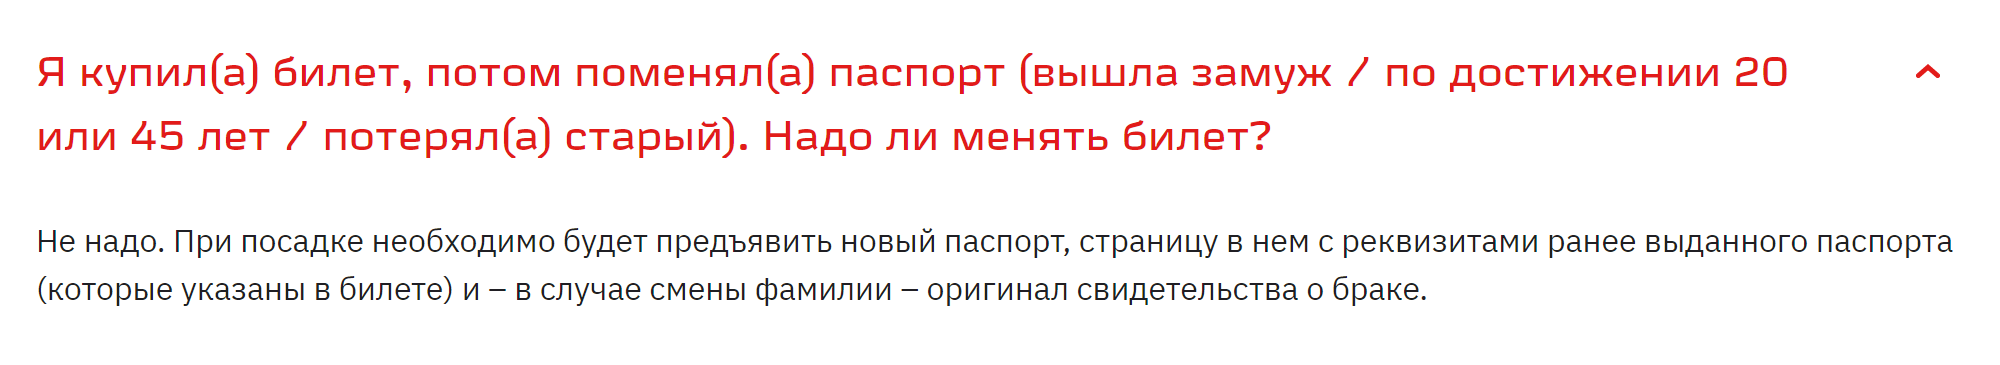 На своем сайте РЖД пишет, что при утере паспорта билет менять не нужно. Источник: rzd.ru